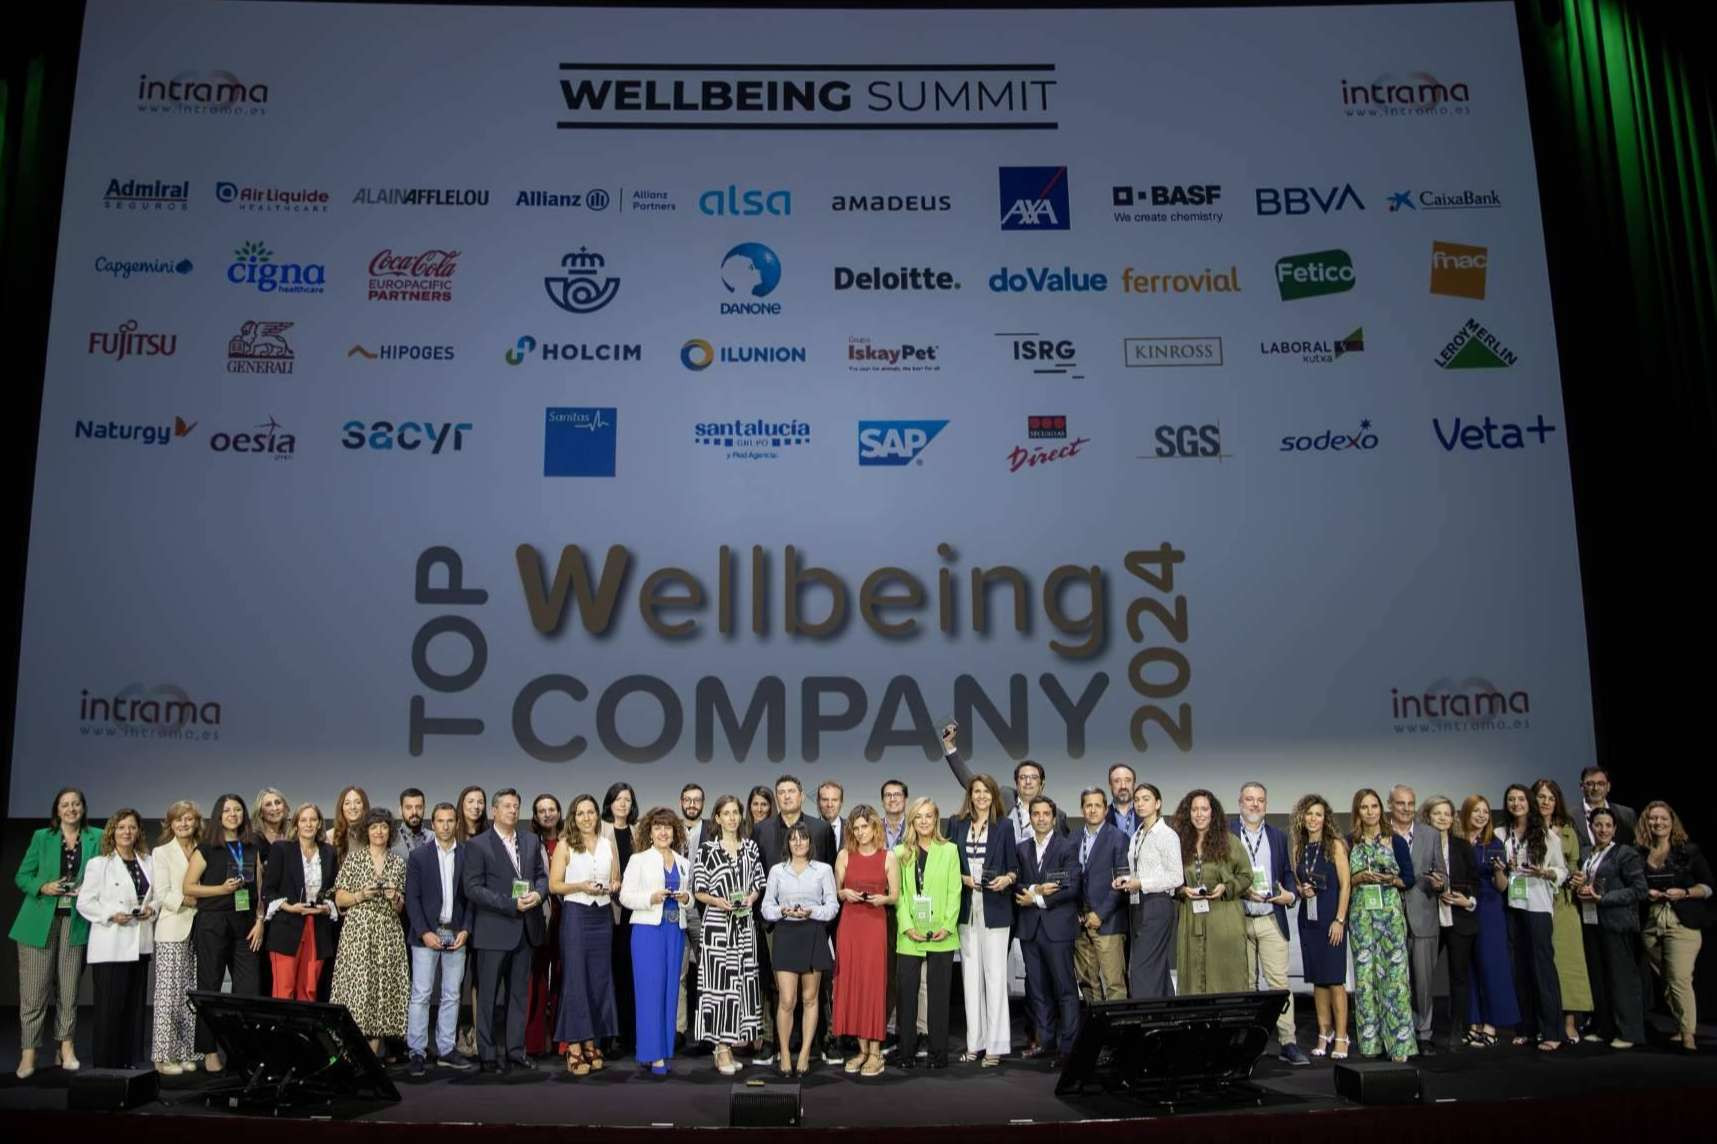  Éxito de Wellbeing Summit organizado por INTRAMA 